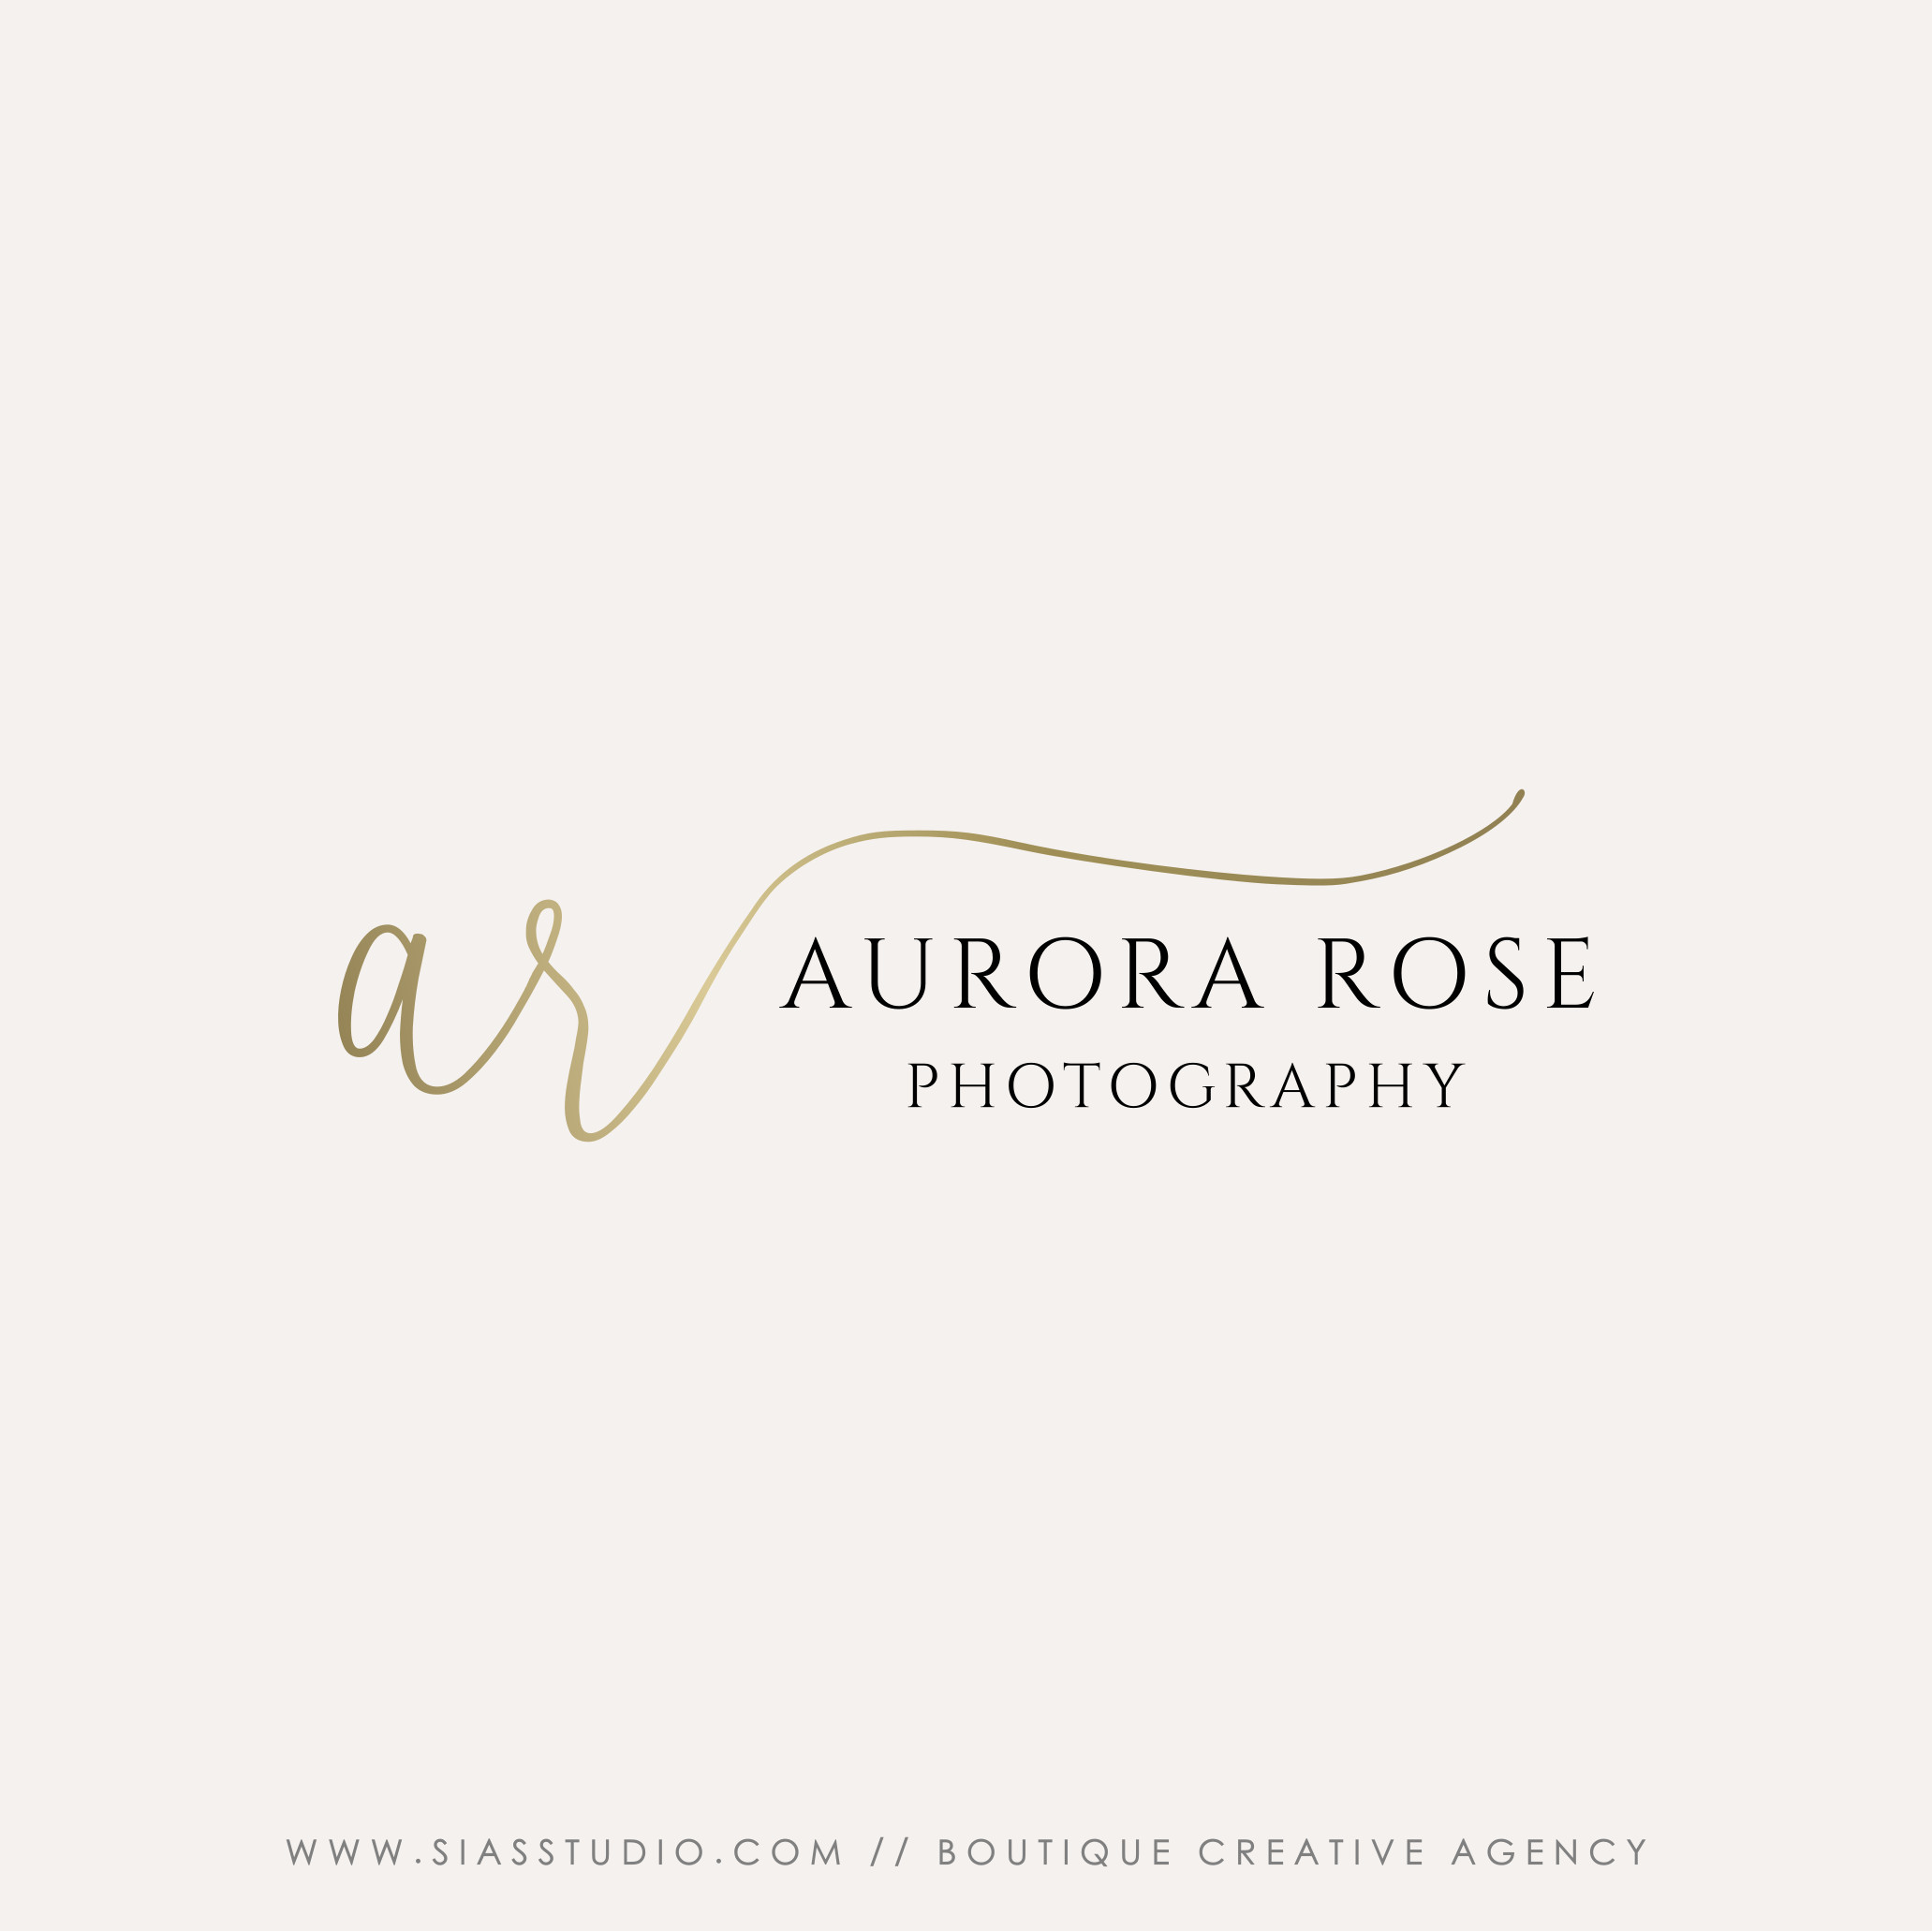 Aurora Rose - Photography logo design with initials - Sias Studio